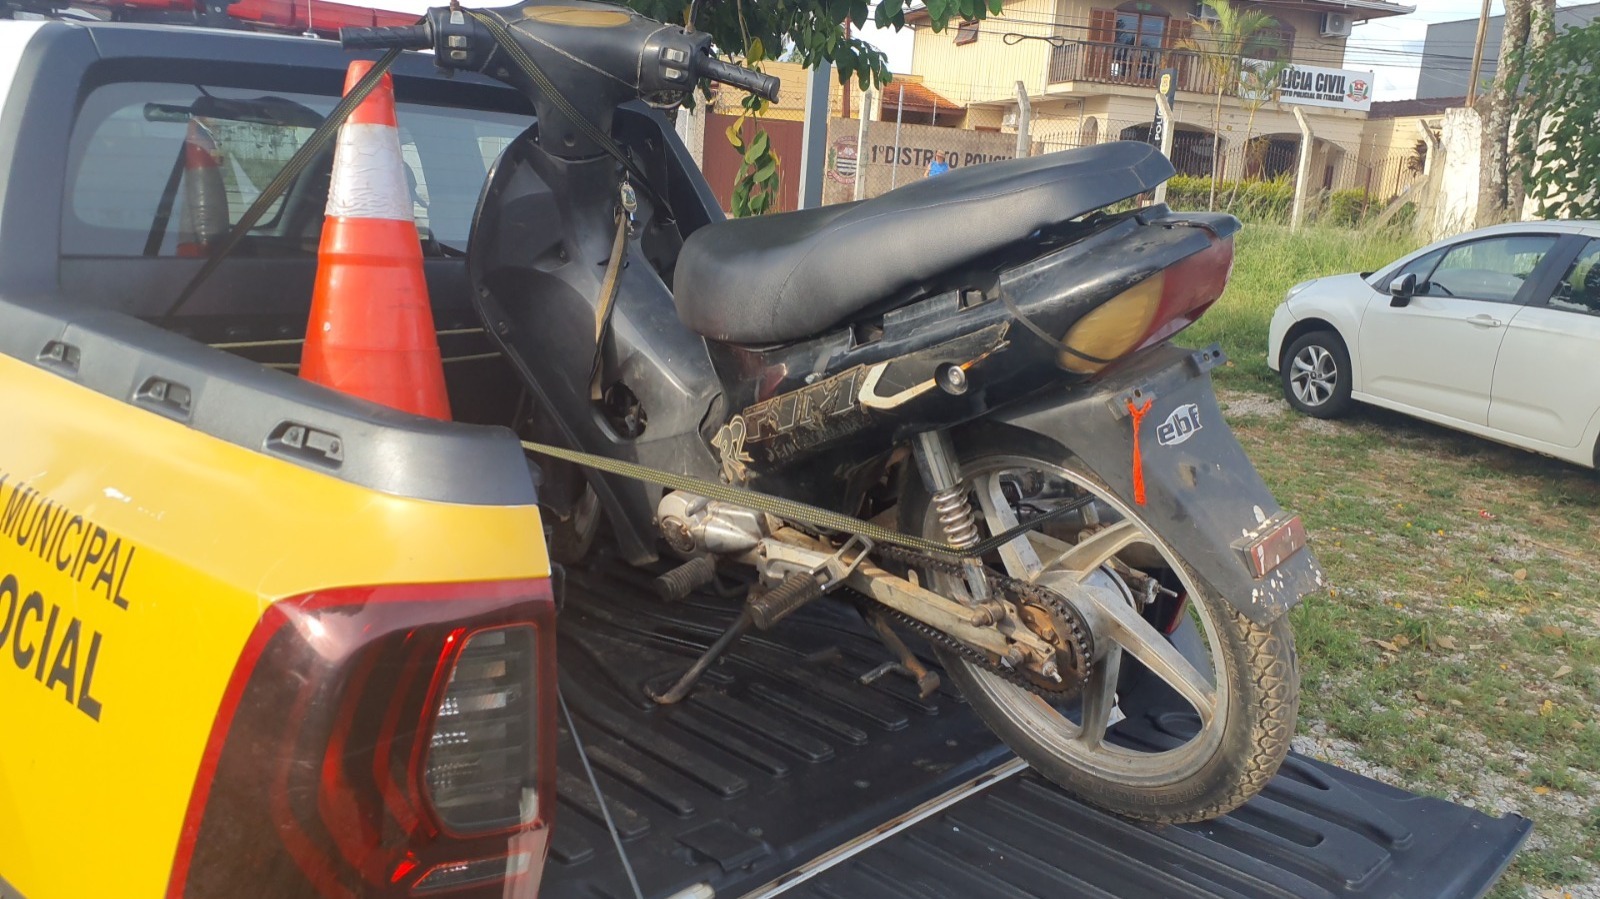 Demutran de Itararé (SP) prende homem em flagrante com motocicleta com chassi raspado 